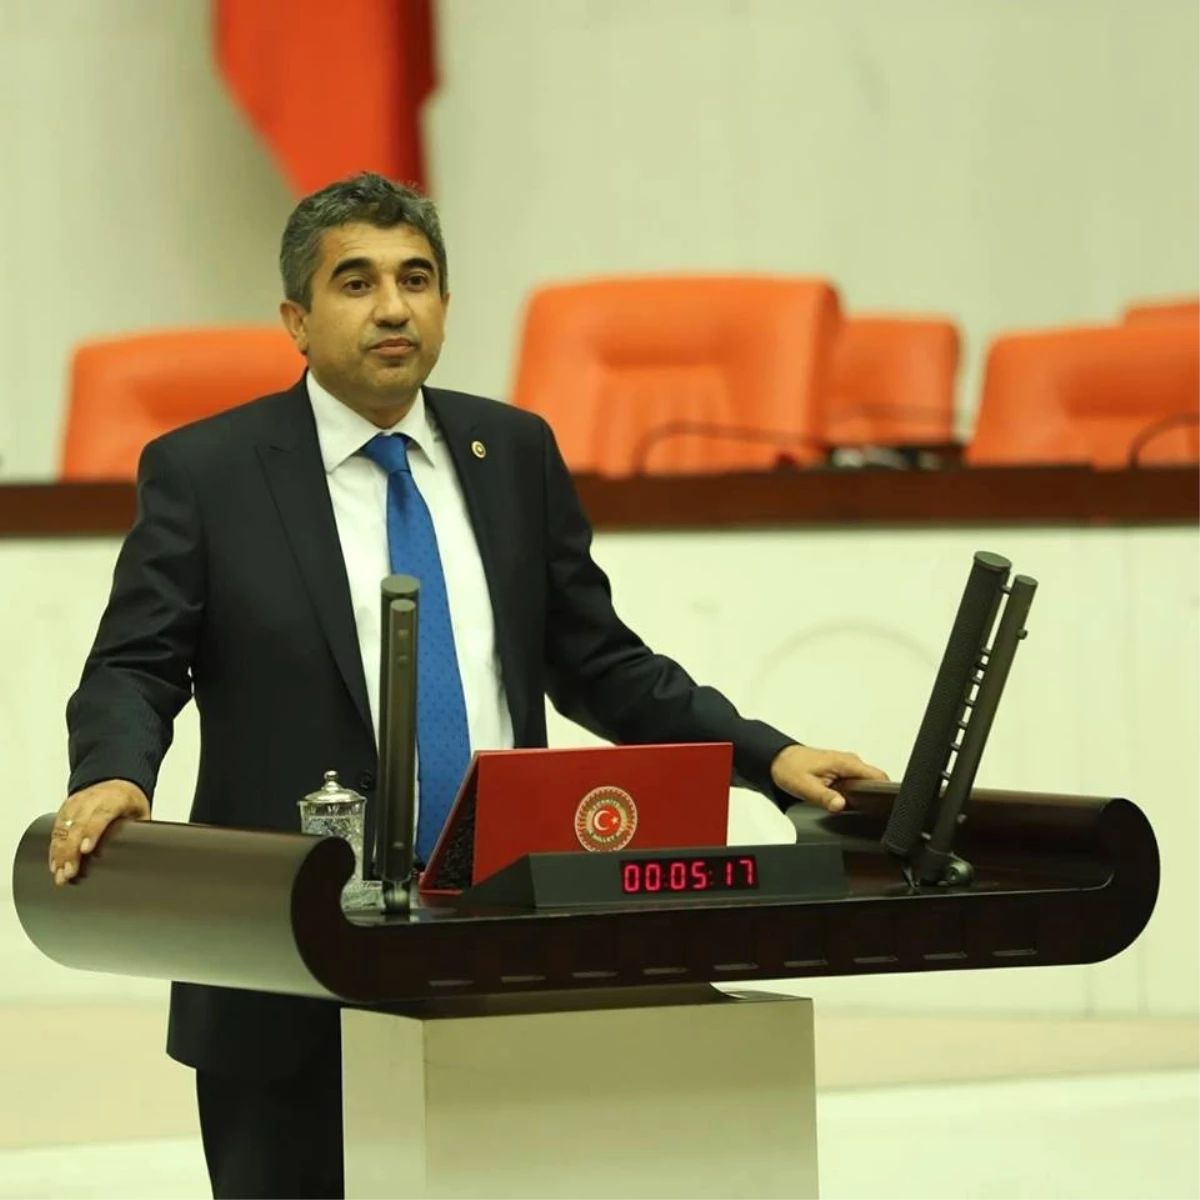 CHP Milletvekili Metin İlhan: "Bireyler Eşit Hak ve Özgürlüklerle Adil Yargılama Hakkına Sahiptir"